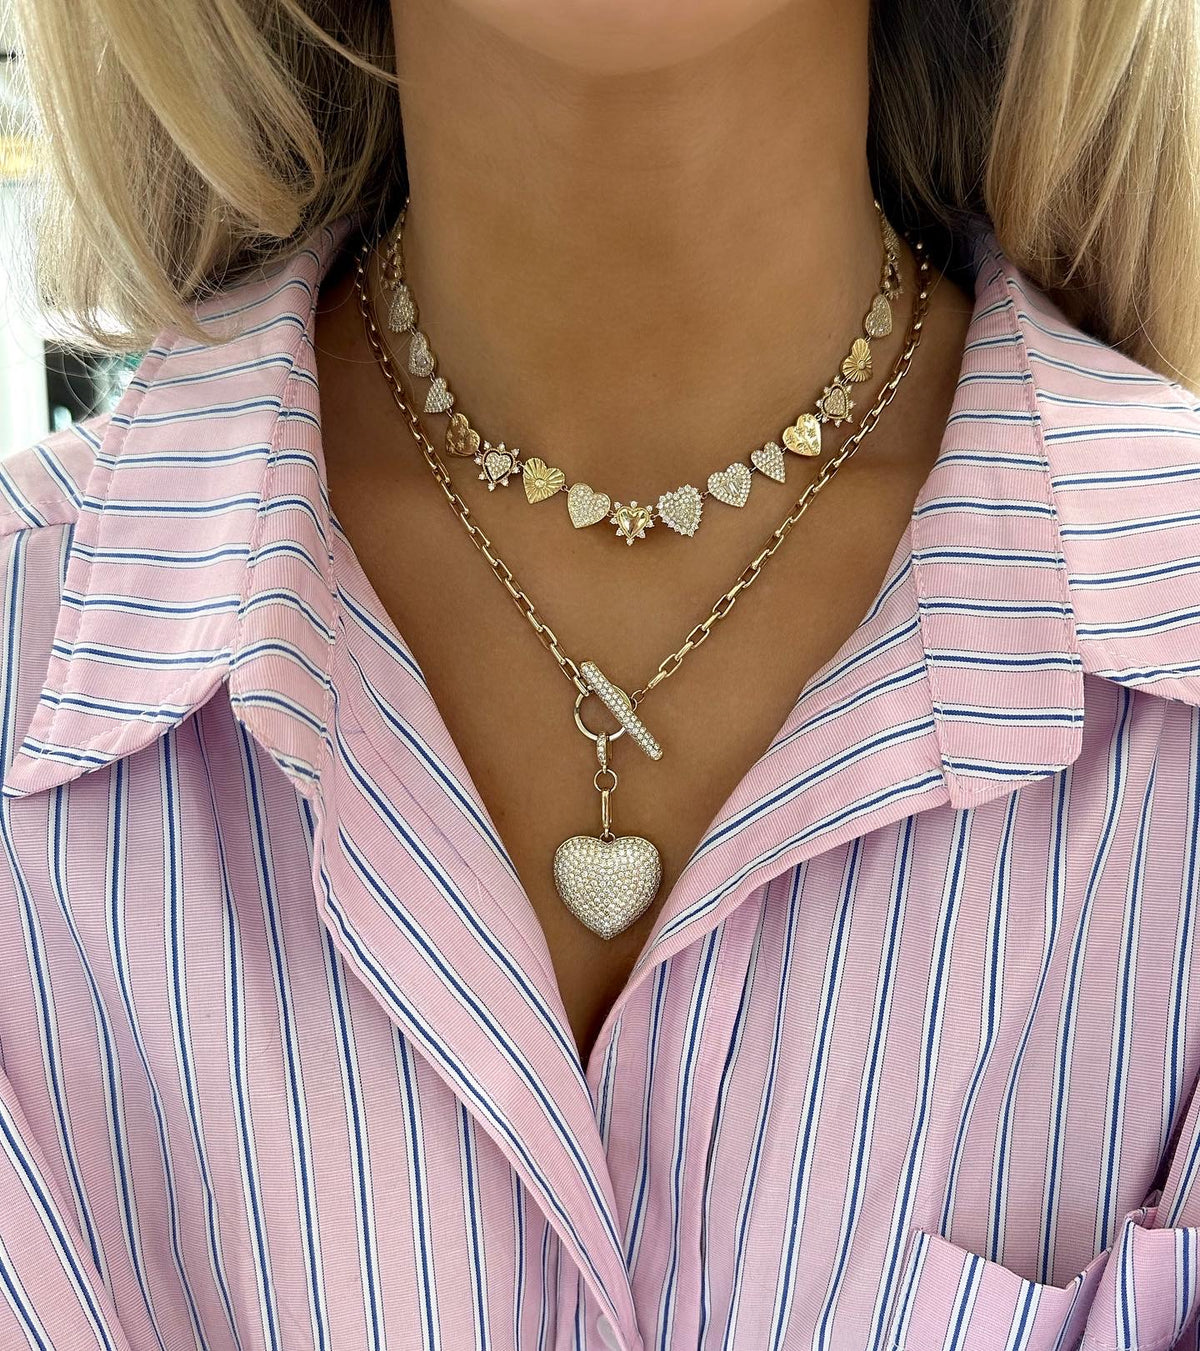 Soleil Diamond Heart Charm Necklace 5.15 ctw